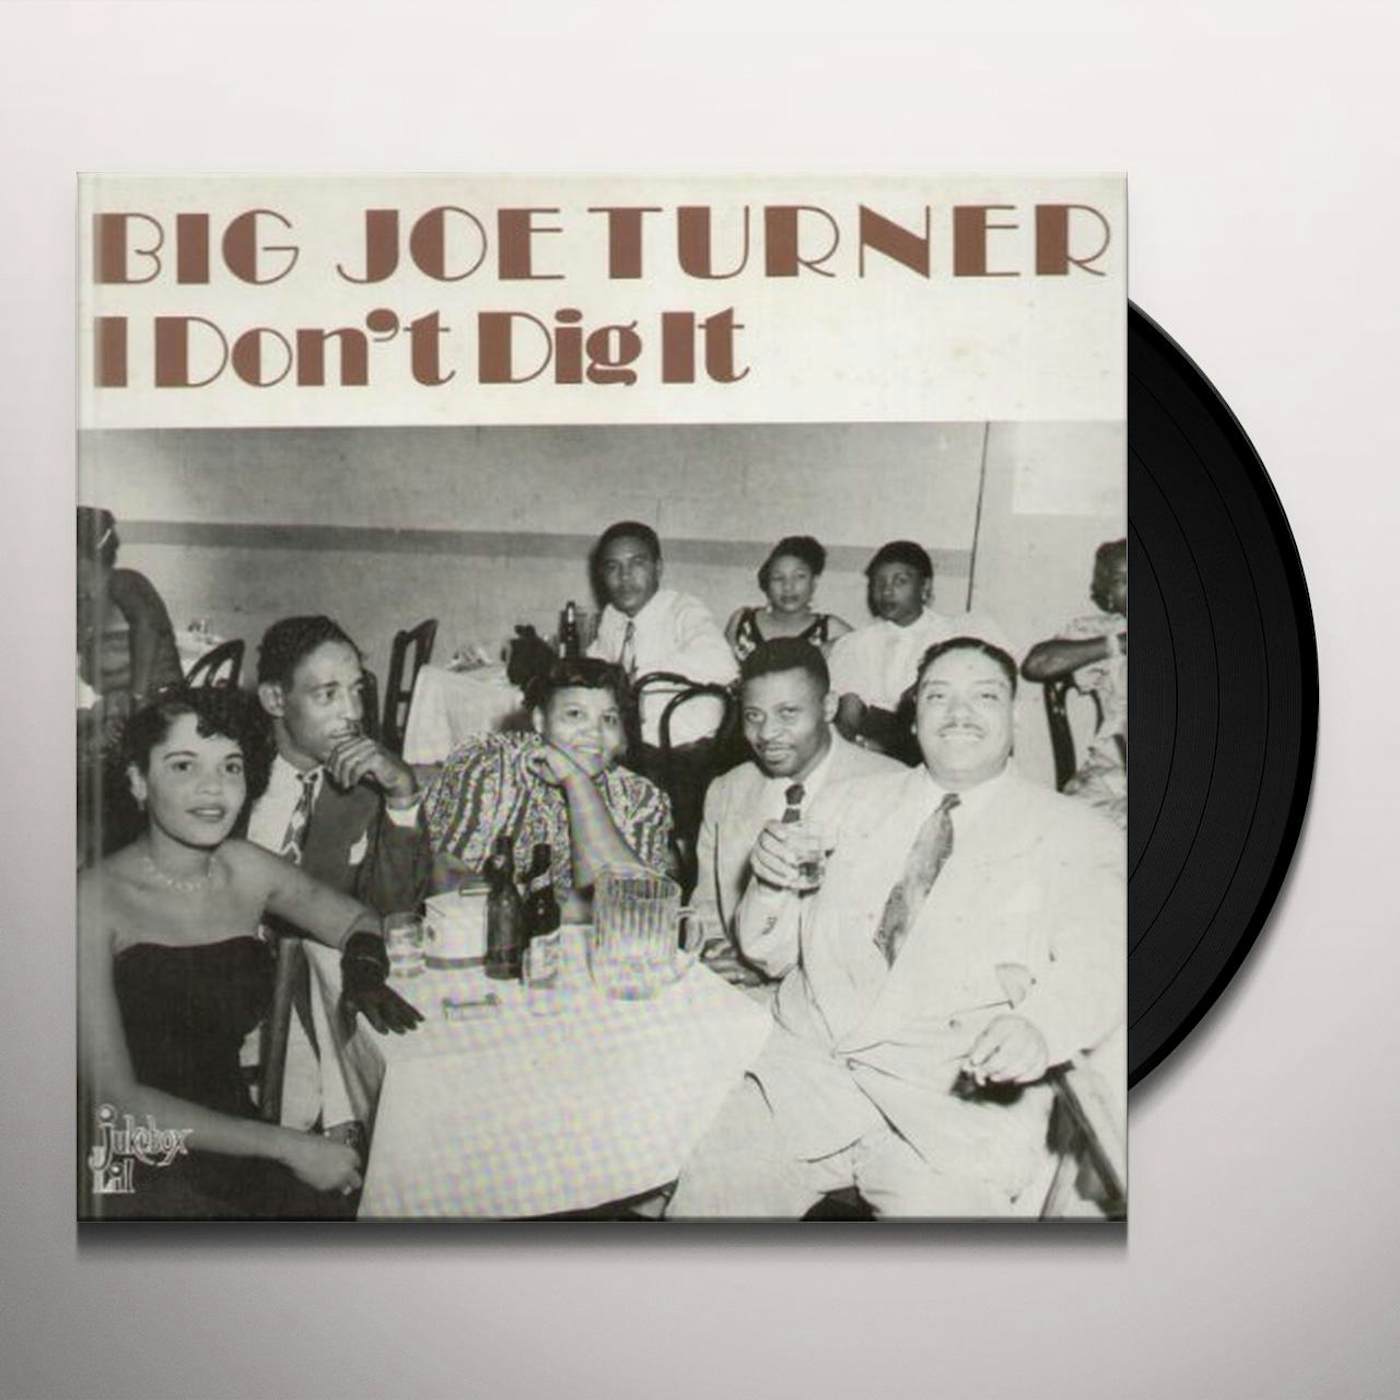 Big Joe Turner I DON'T DIG IT Vinyl Record